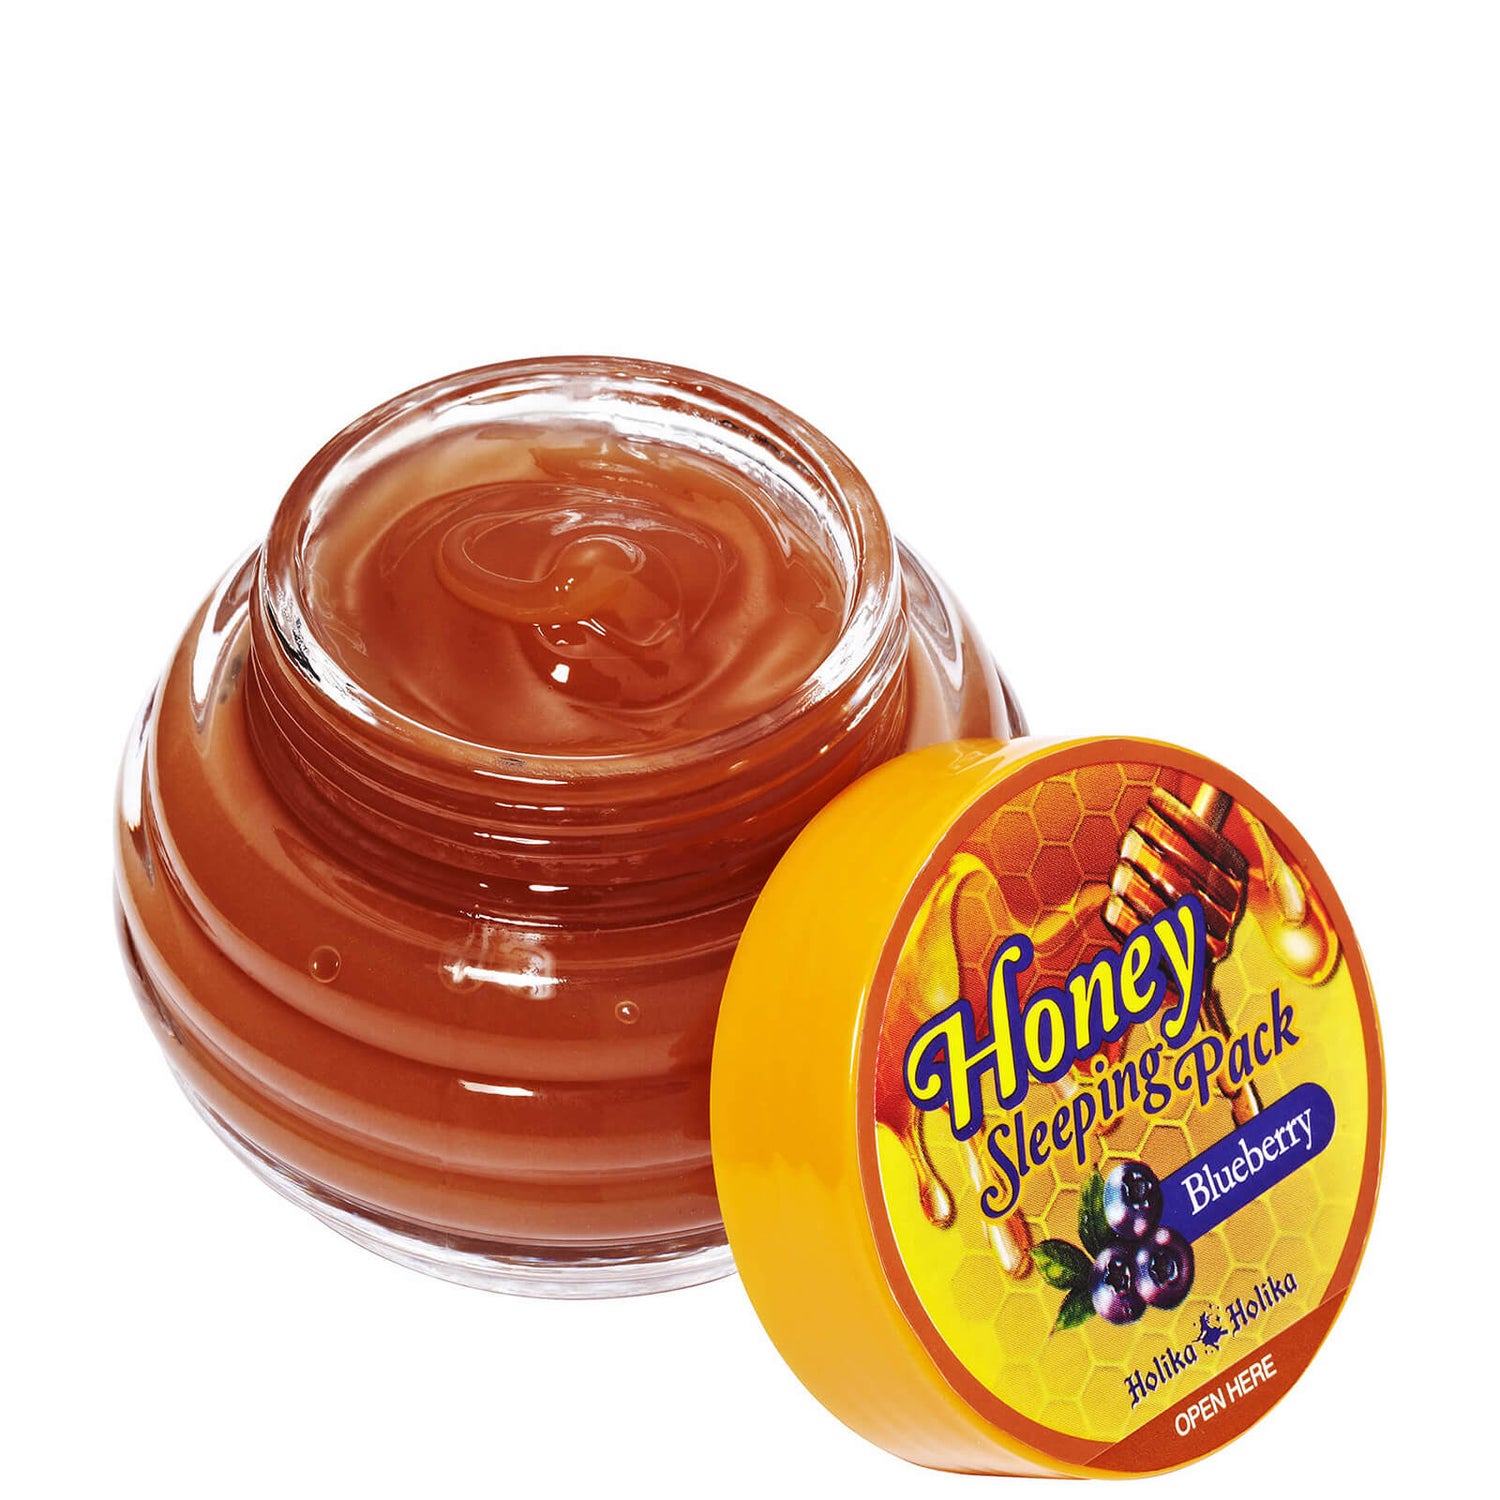 Holika Holika Honey Sleeping Pack maschera notte (mora)